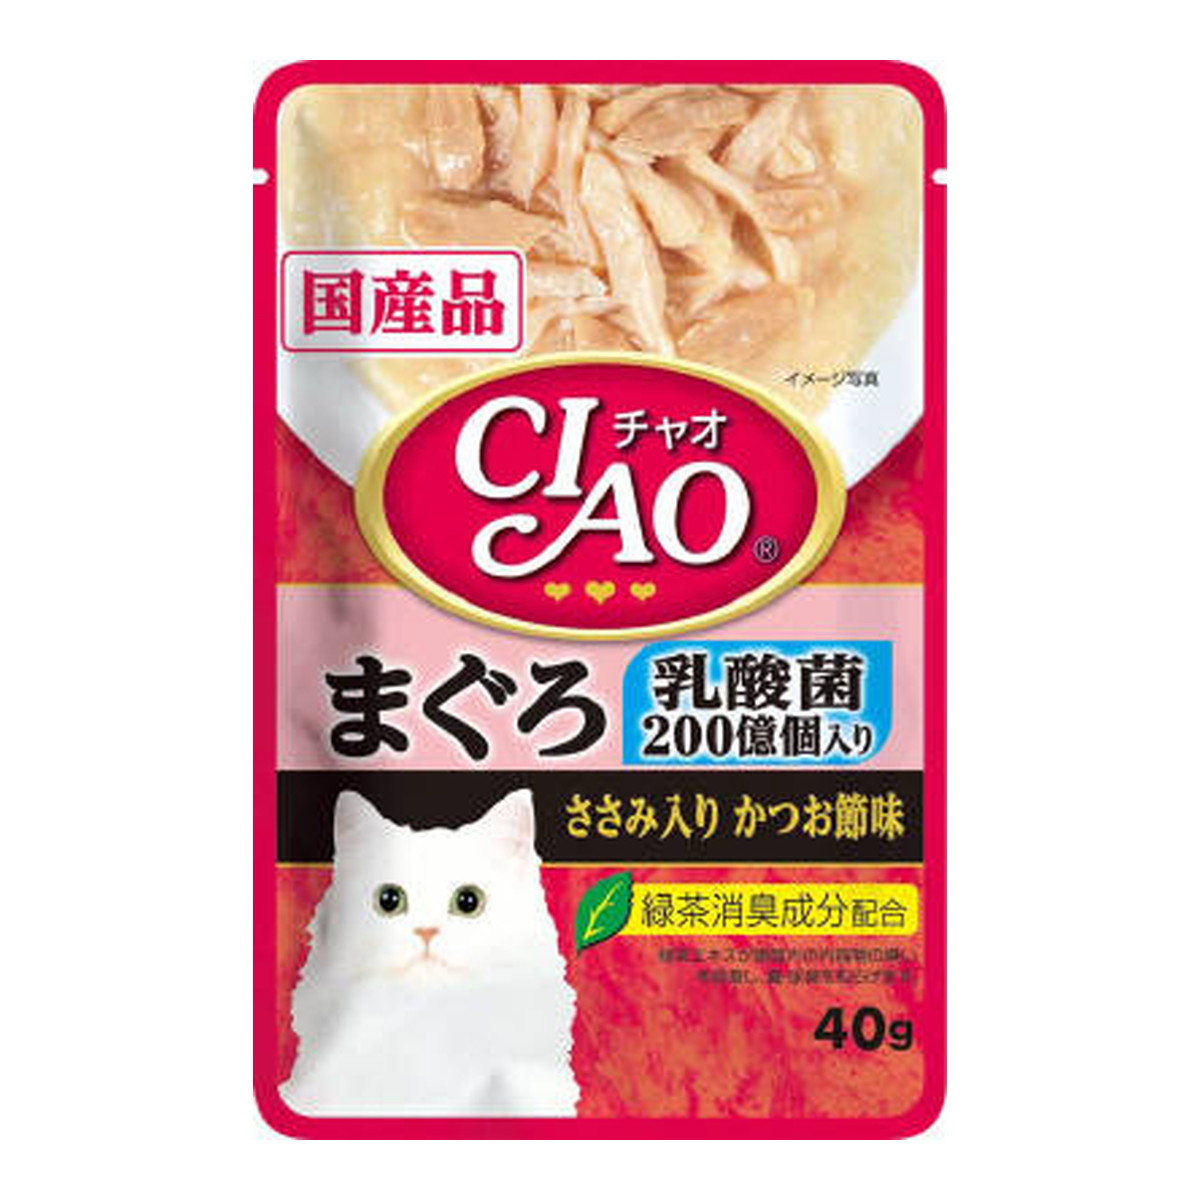 いなばペットフード CIAO パウチ 乳酸菌入り まぐろ ささみ入りかつお節味 IC-301 40g×16個 CIAO（いなばペットフード） 猫缶、ウエットフードの商品画像